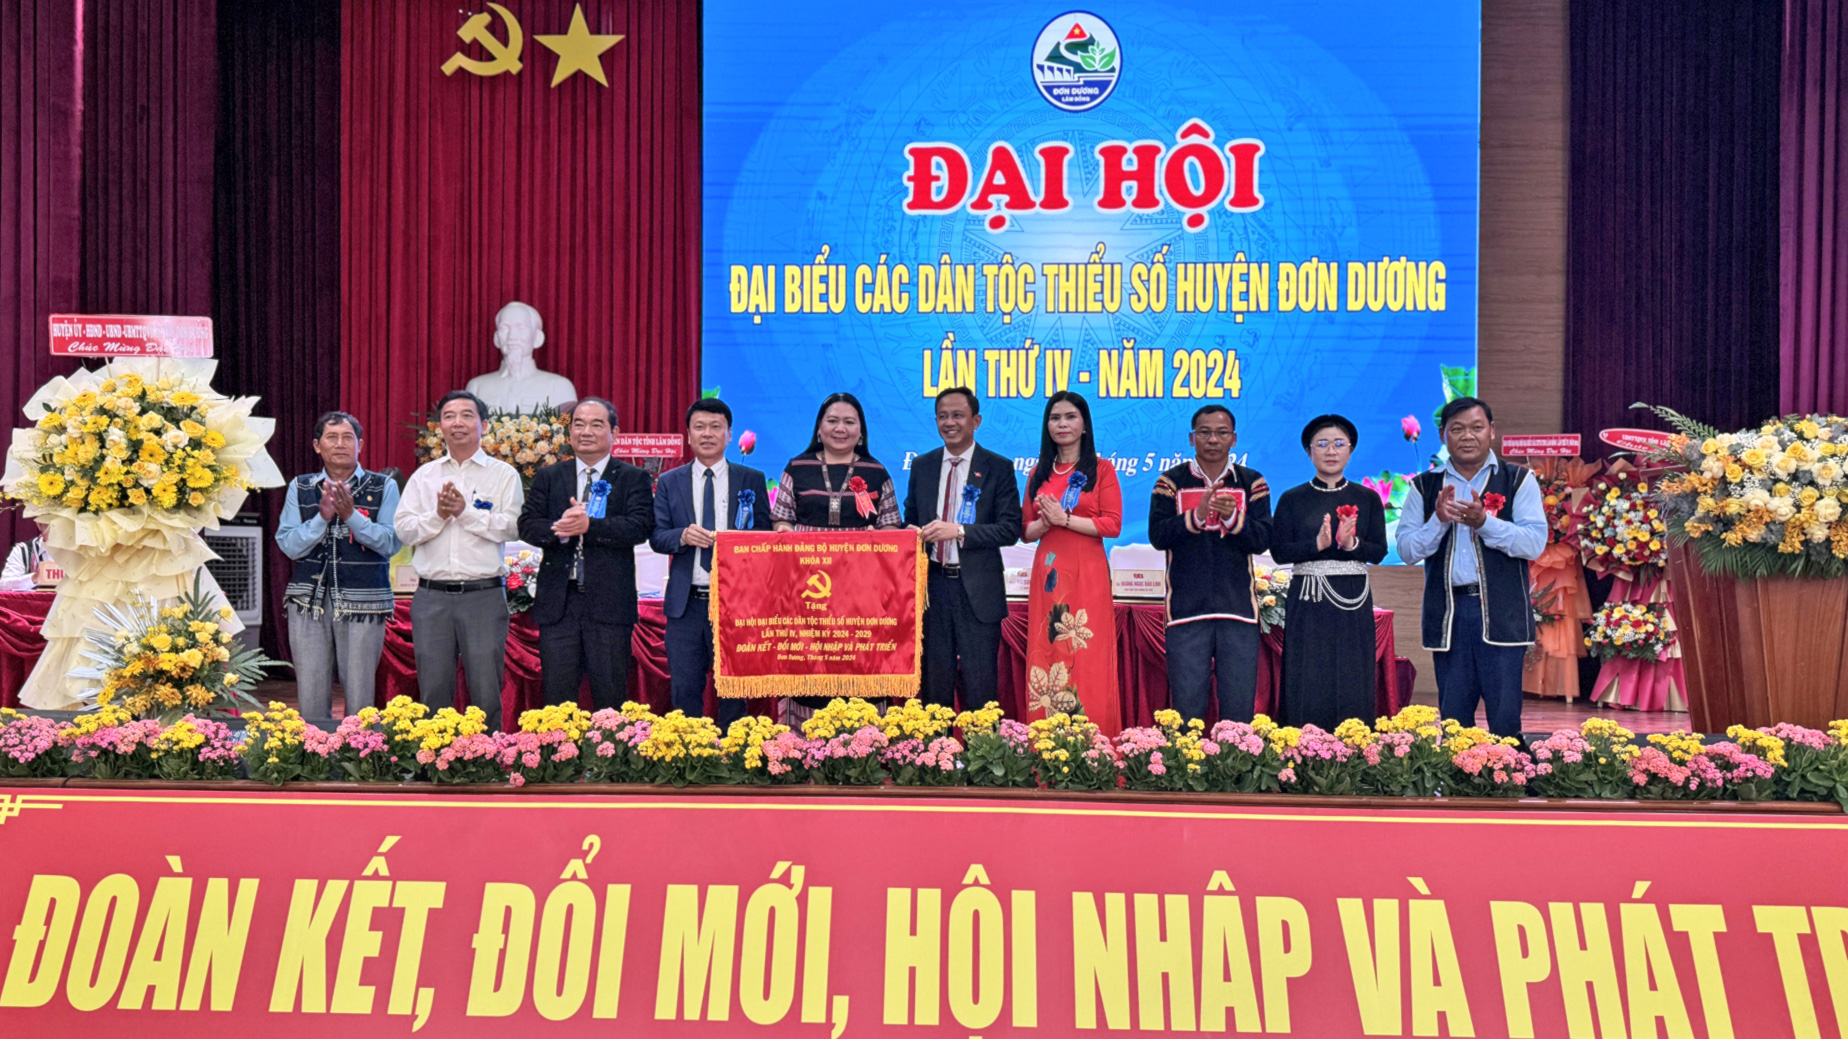                                     Lãnh đạo huyện Đơn Dương tặng cờ chúc mừng đại hội